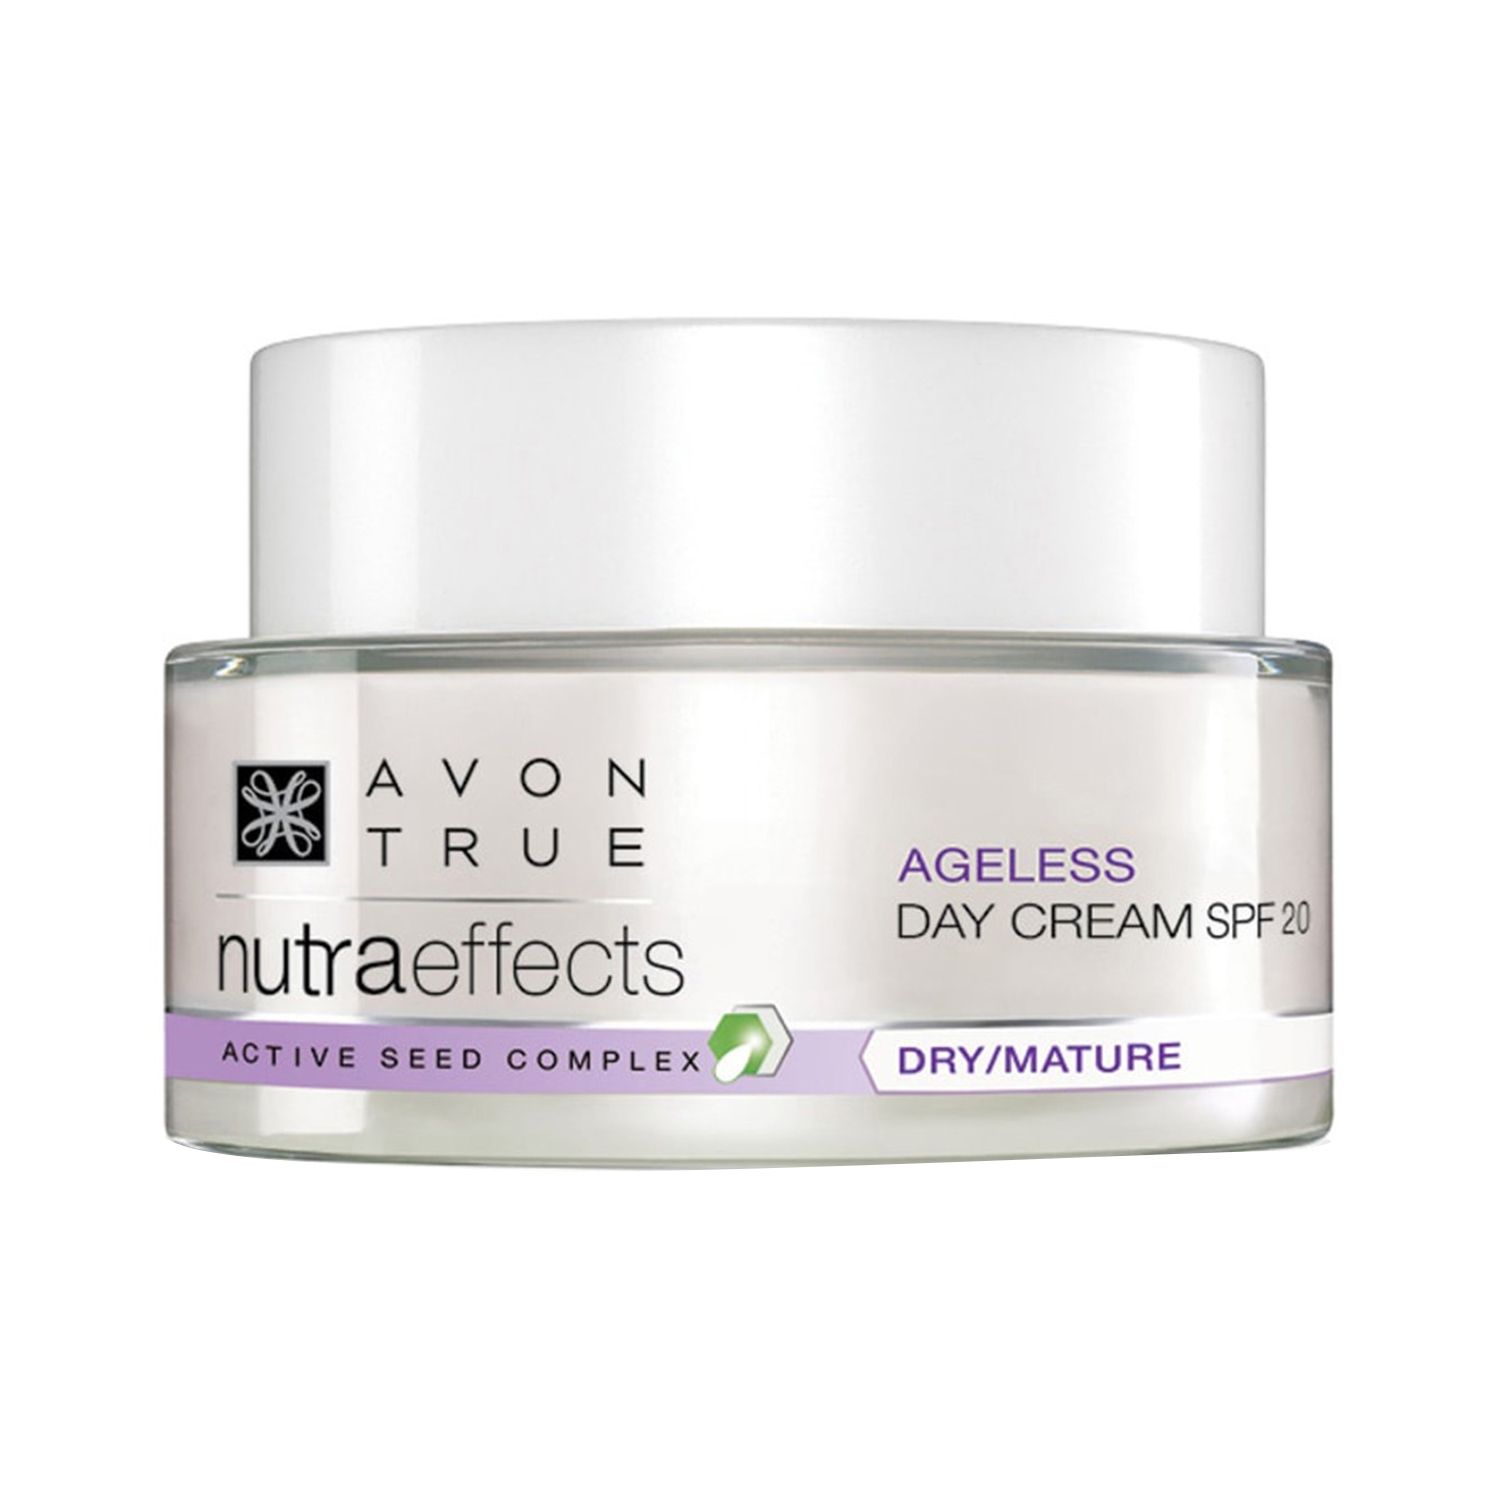 Avon | Avon True Nutraeffects Ageless Day Cream SPF 20 (50g)